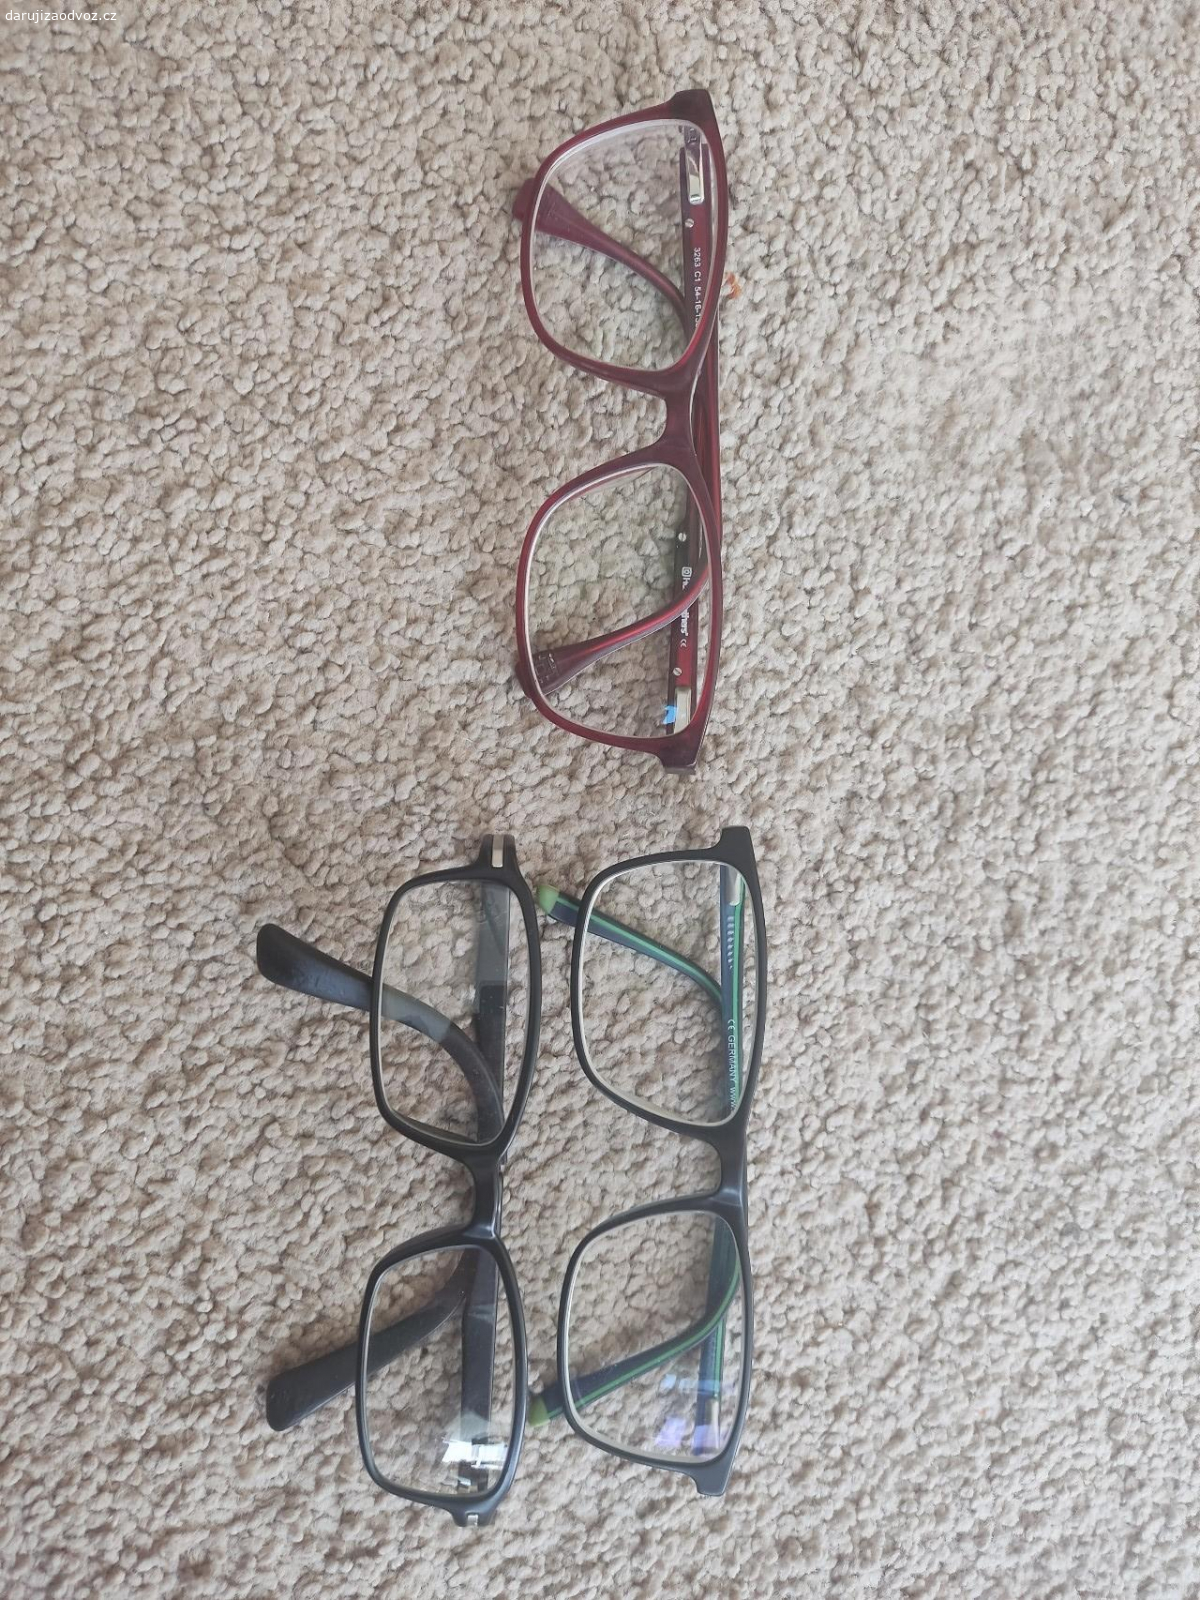 Daruji použité brýle. červené jsou dámské, zelené a černé jsou juniorské.Neposilam.